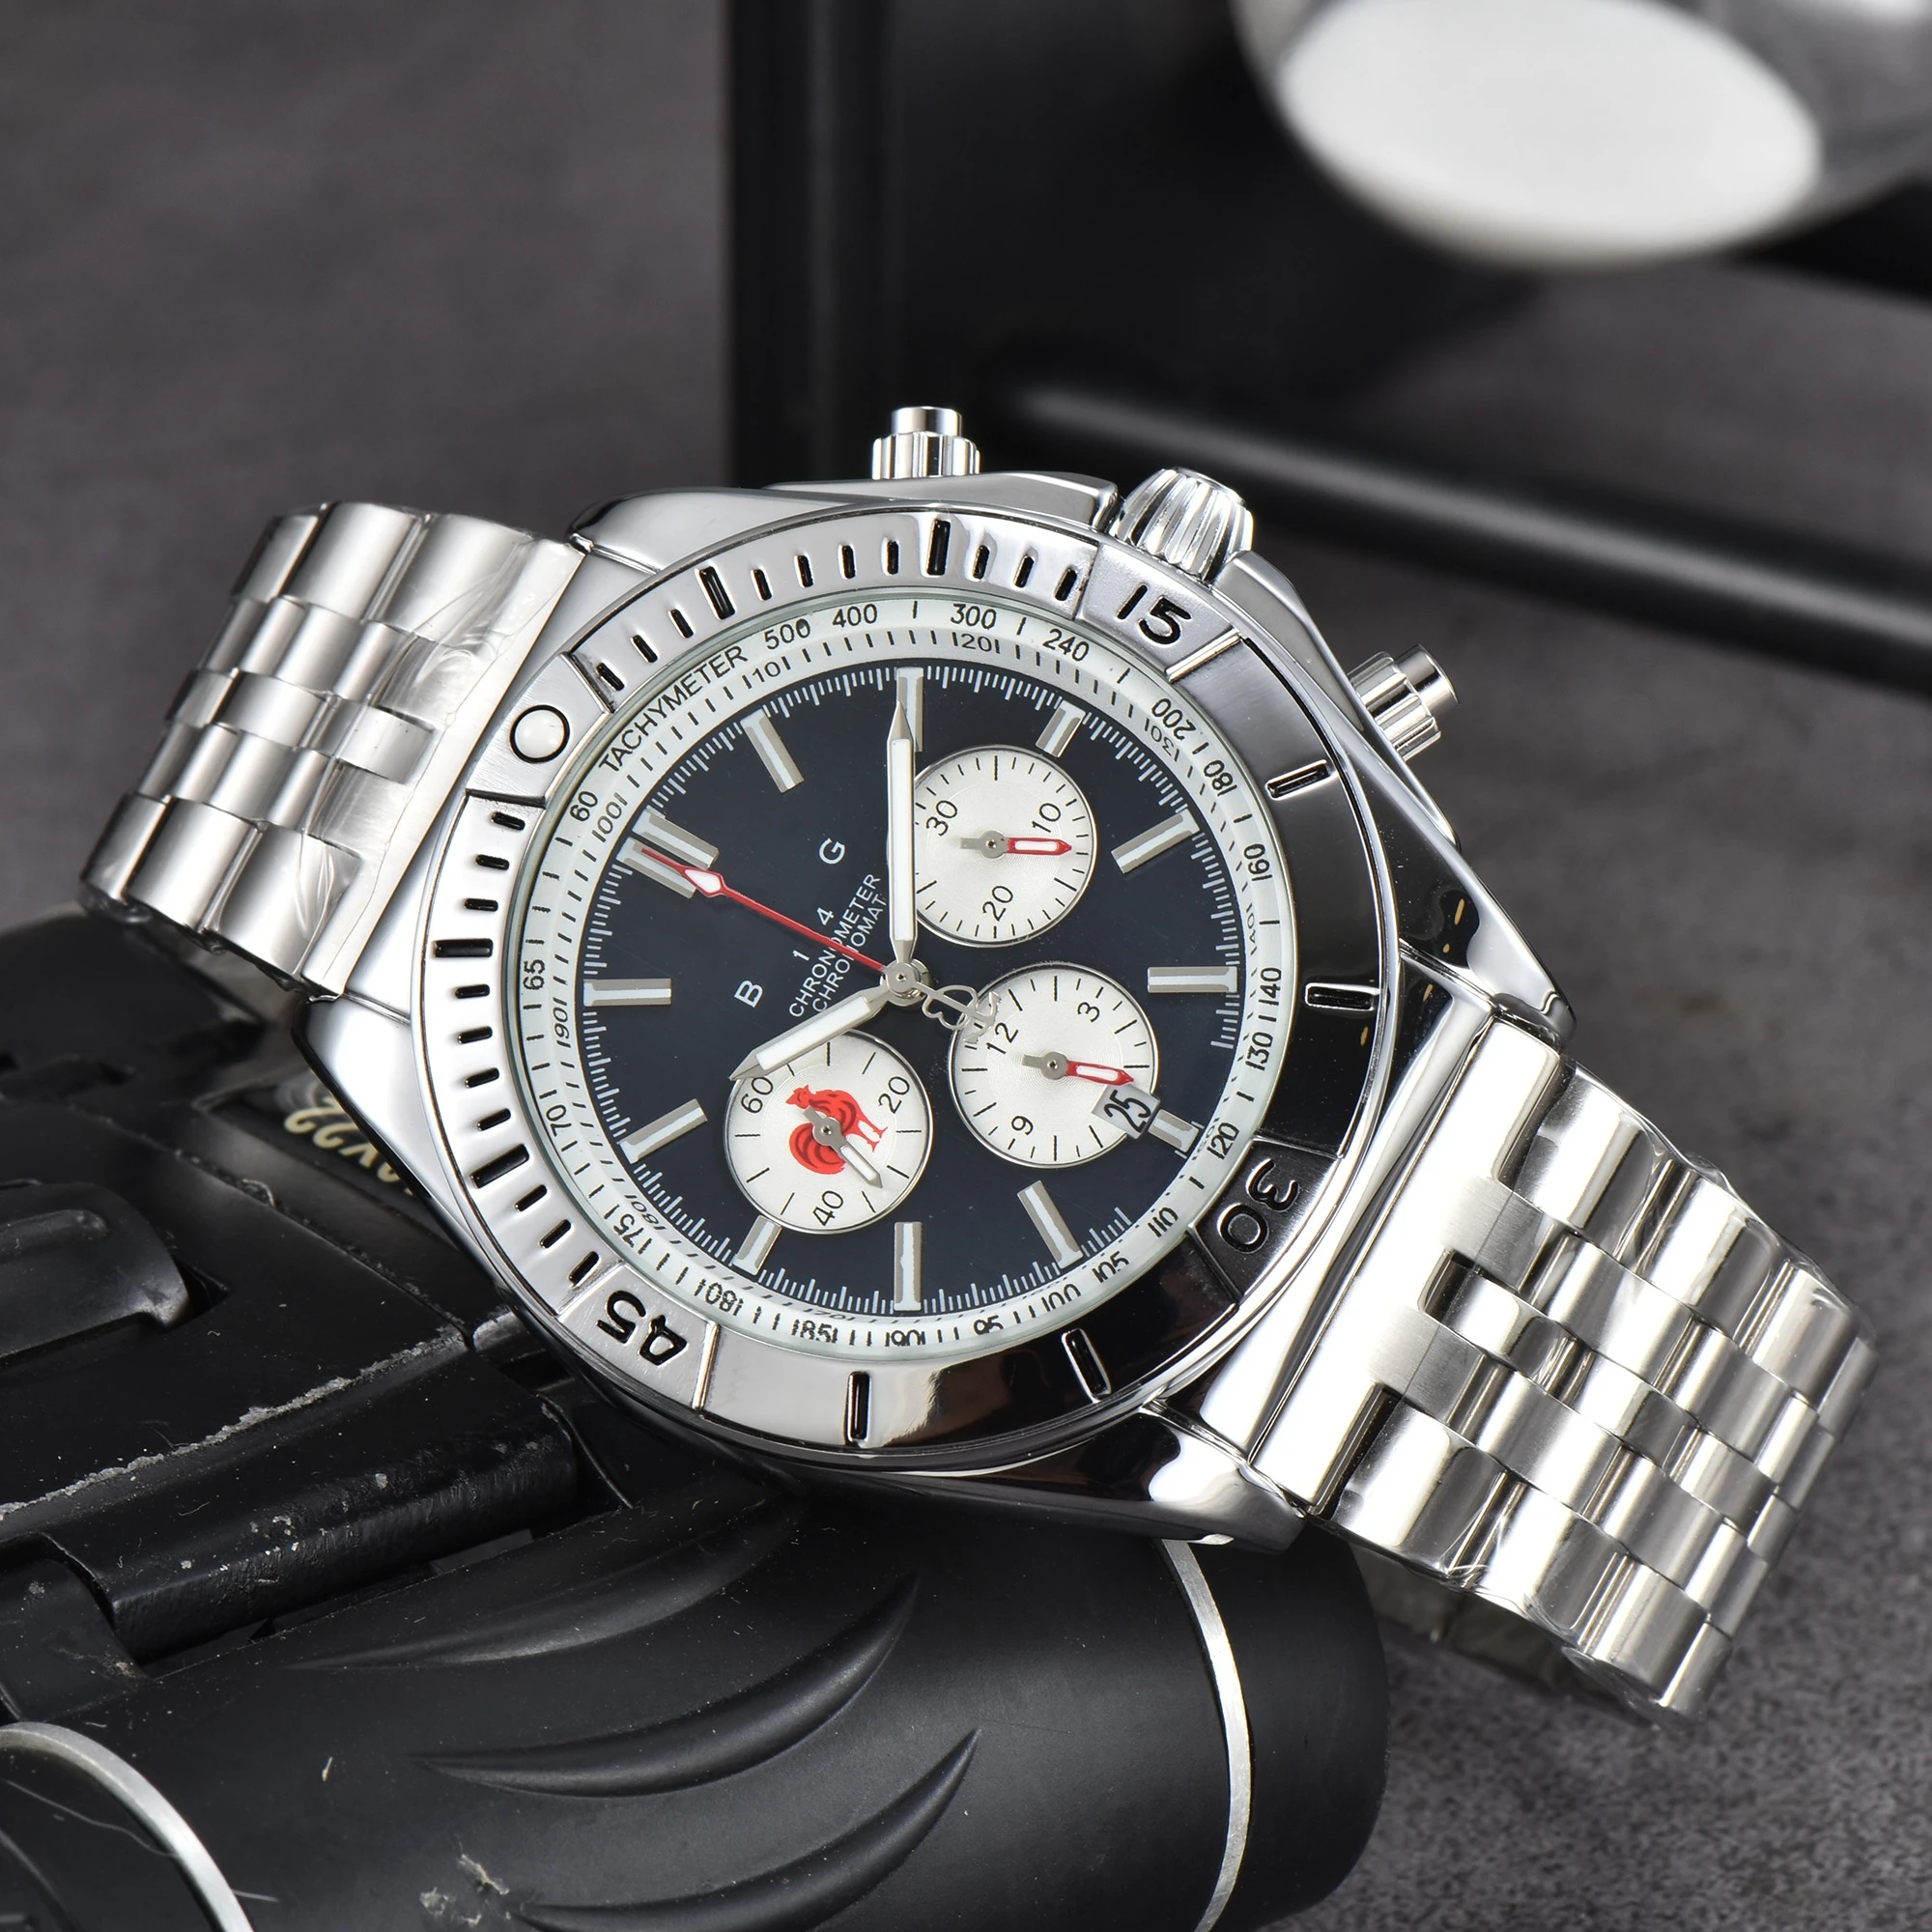 

Reloj de pulsera de cuarzo para hombre, cronógrafo de acero inoxidable de alta calidad, con correa y fecha automática